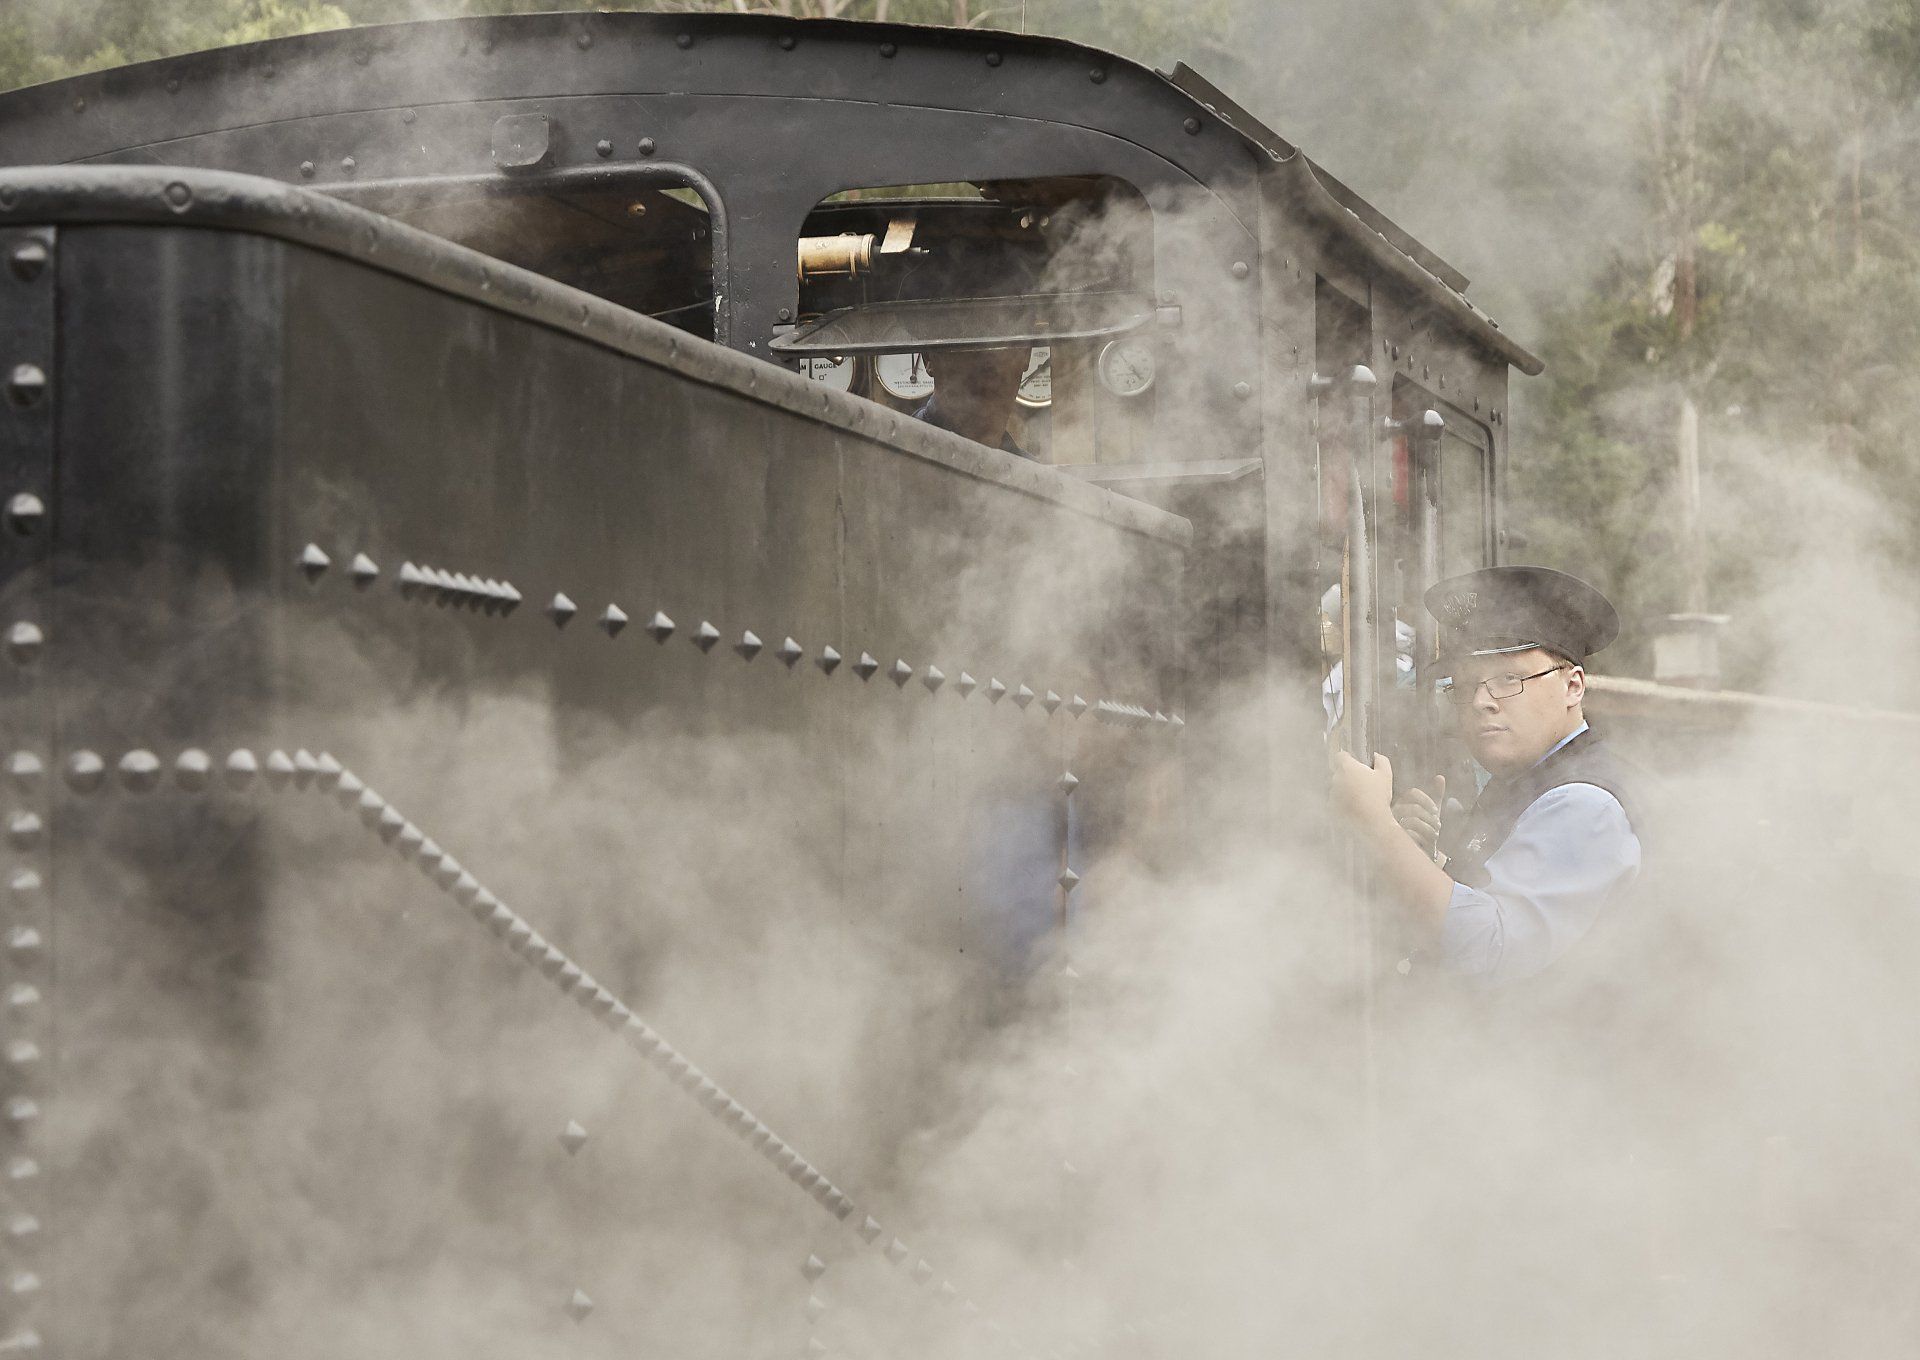 Train steam